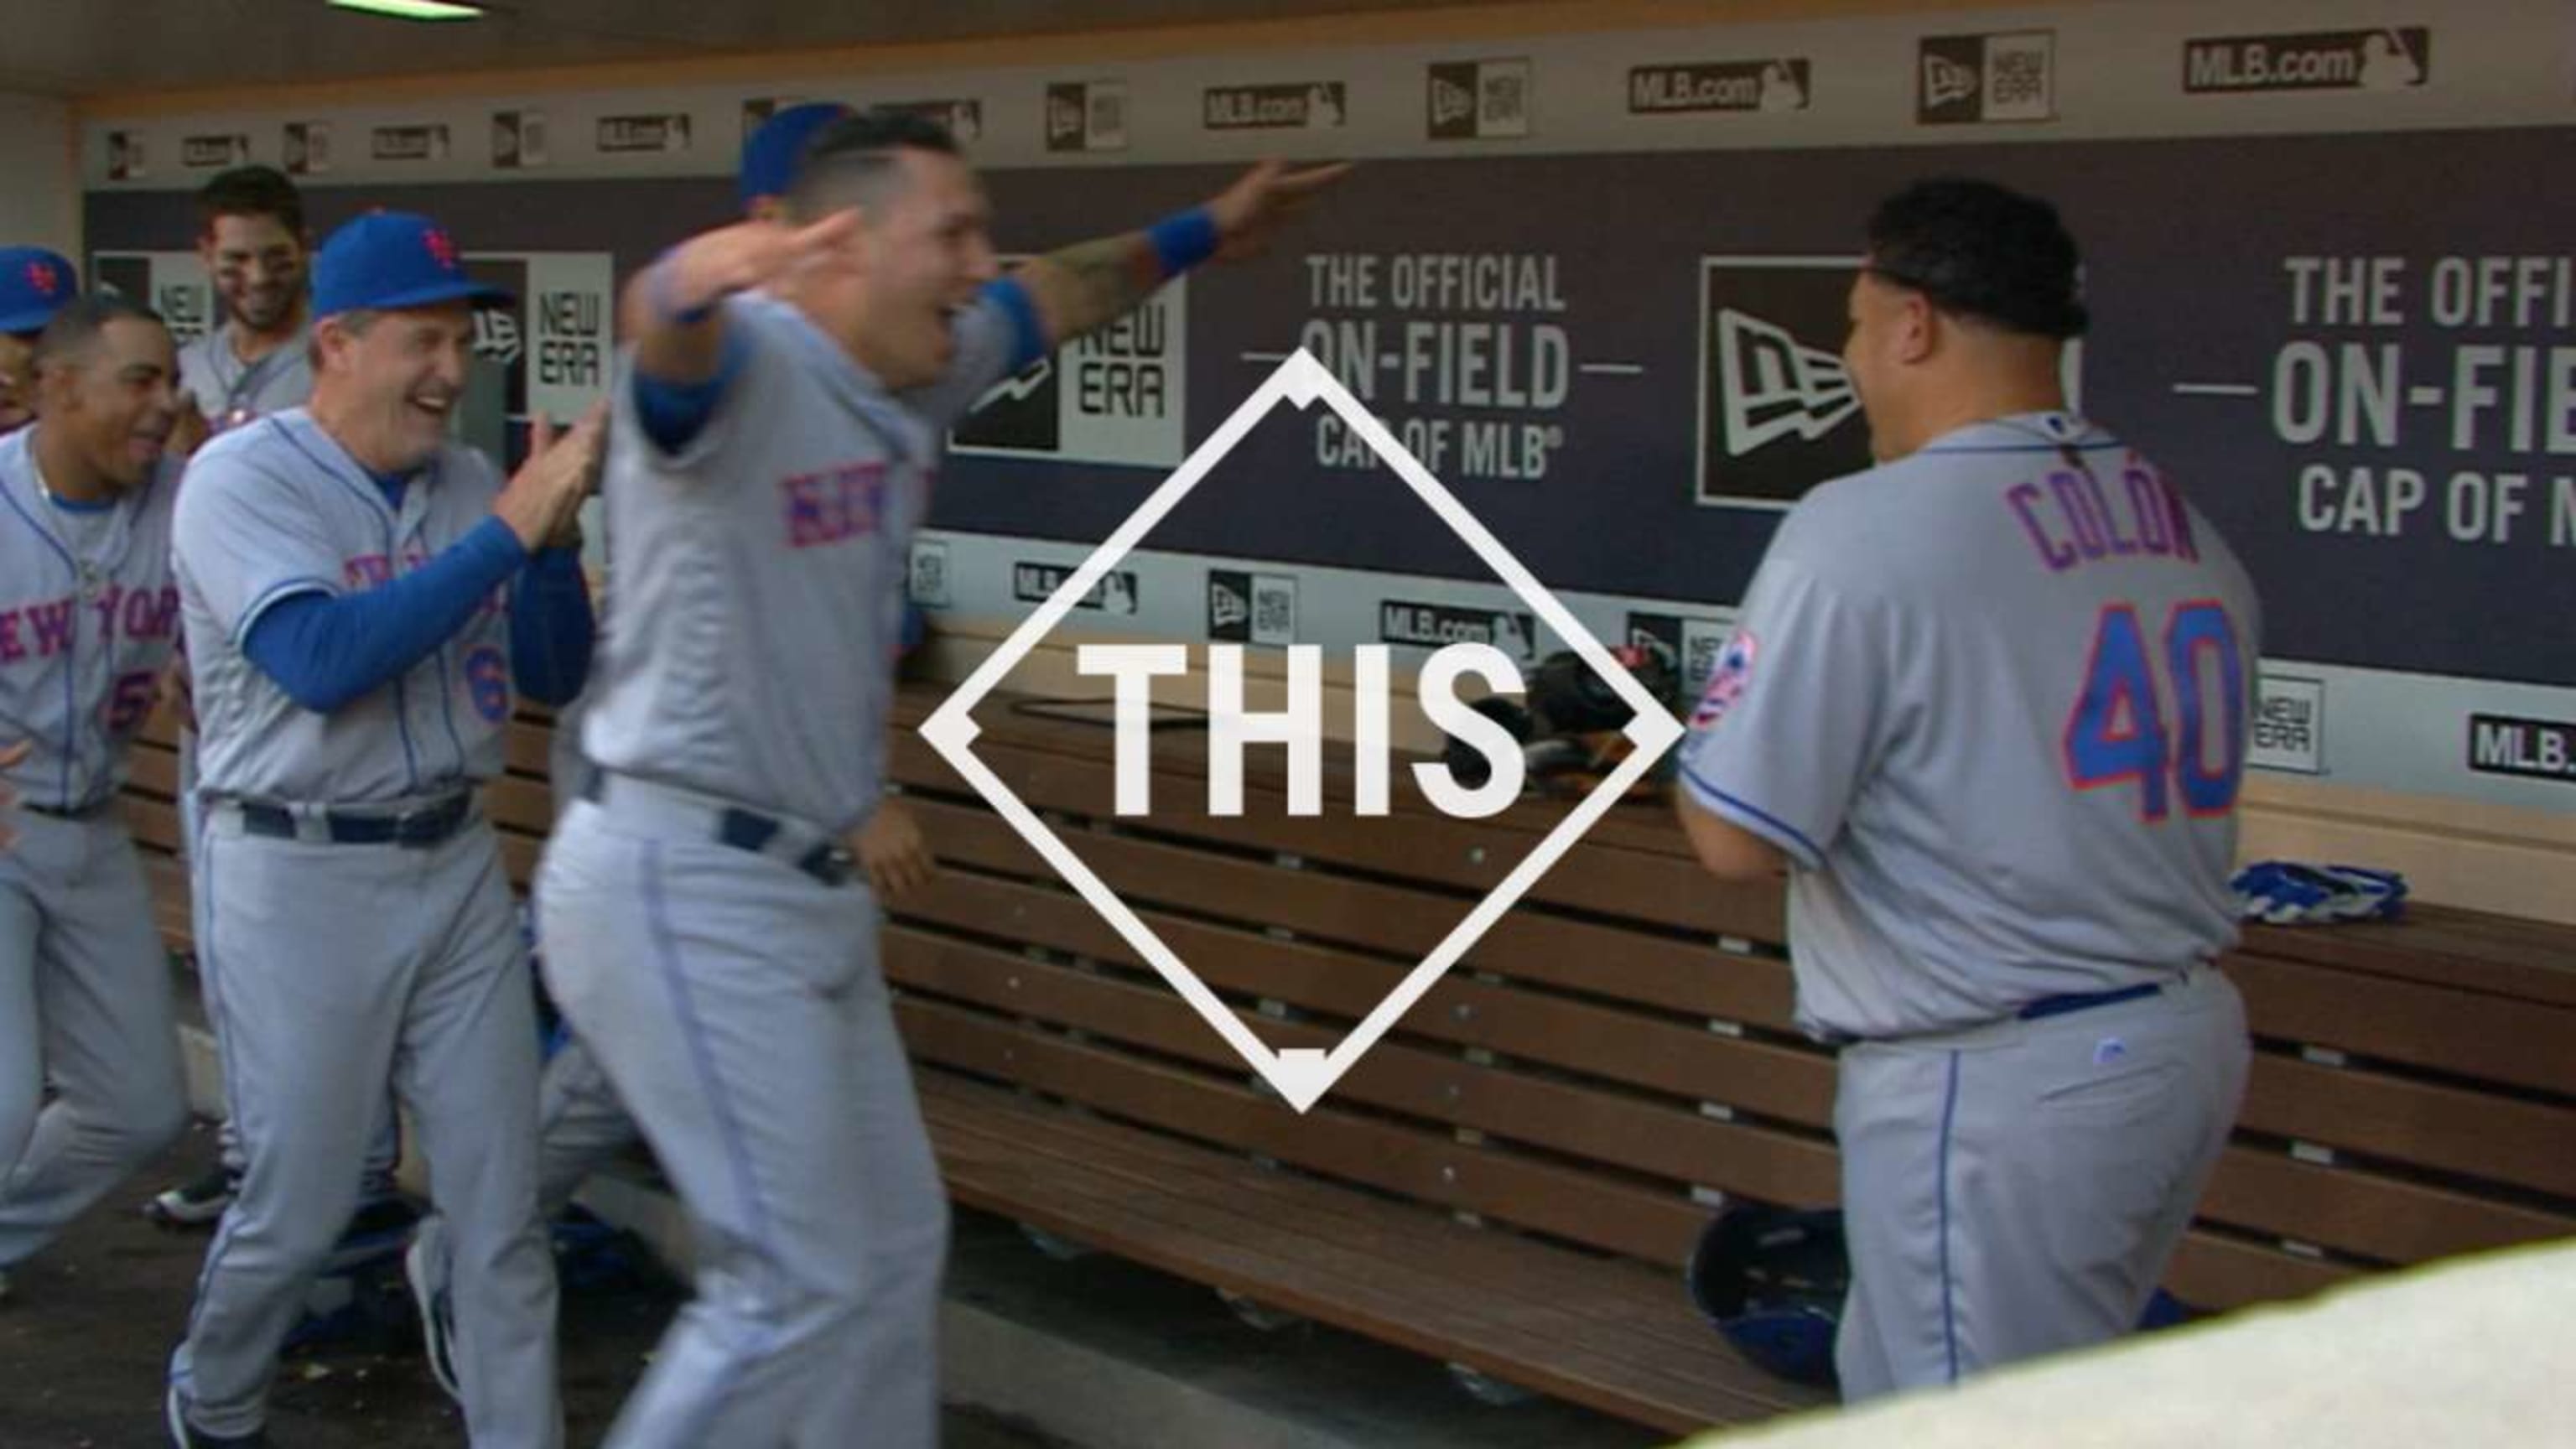 Bartolo Colon's home run will live forever in Mets lore